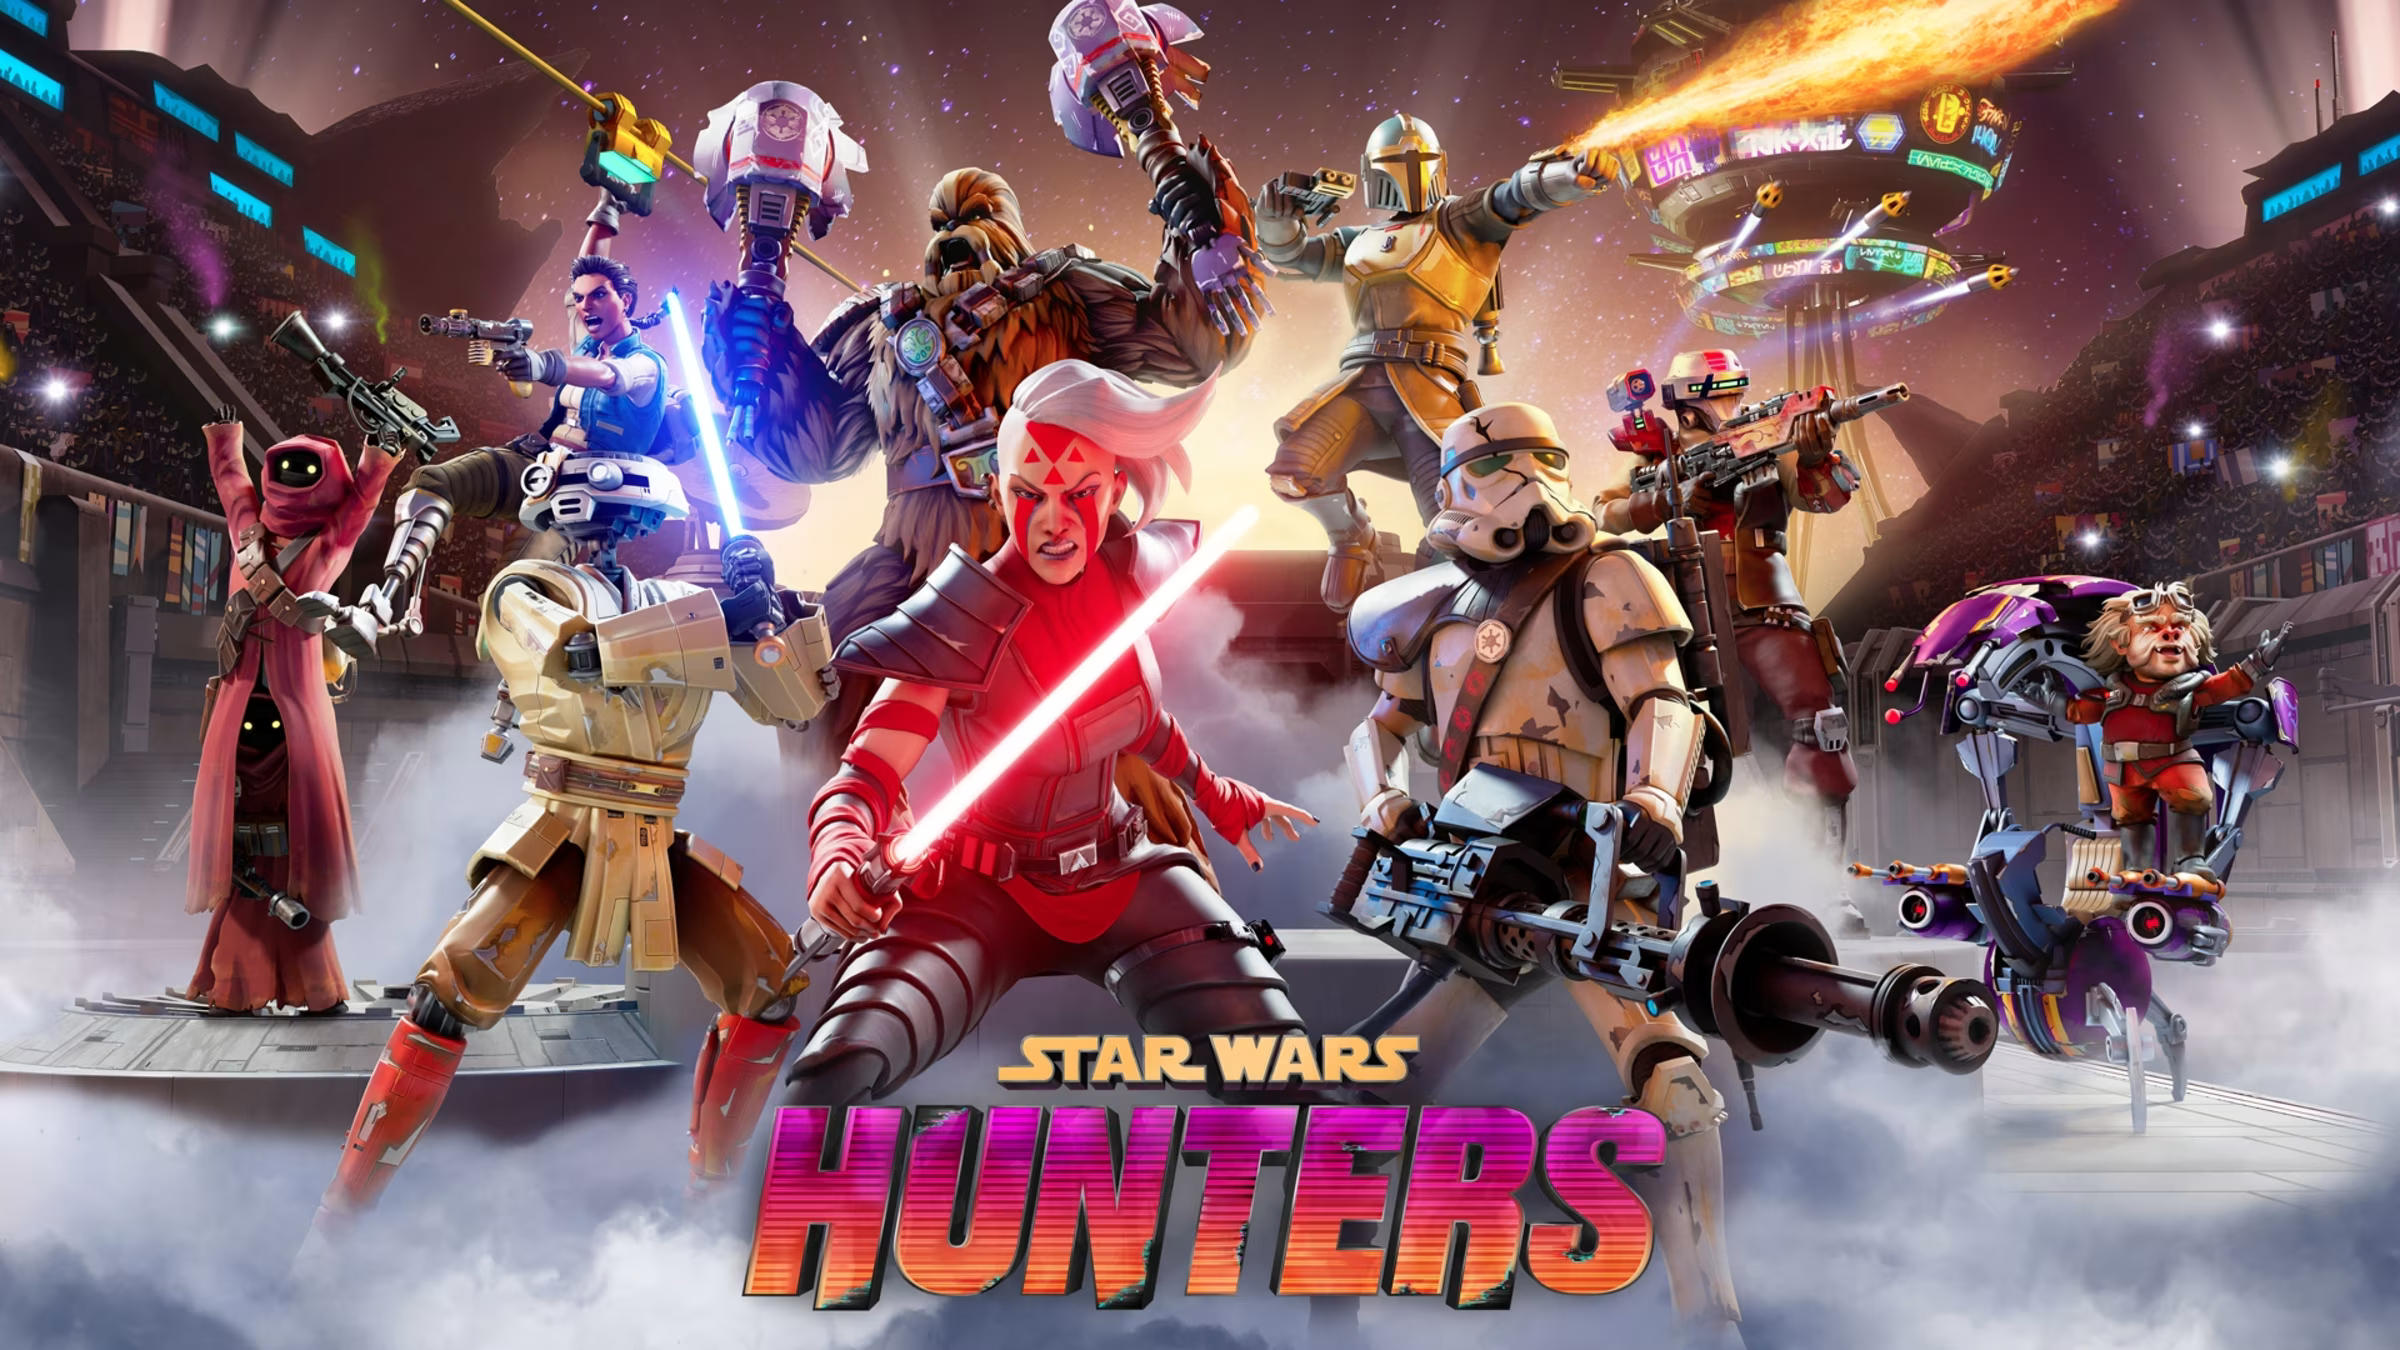 De mobiele shooter Star Wars: Hunters heeft een officiële releasedatum - 4 juni